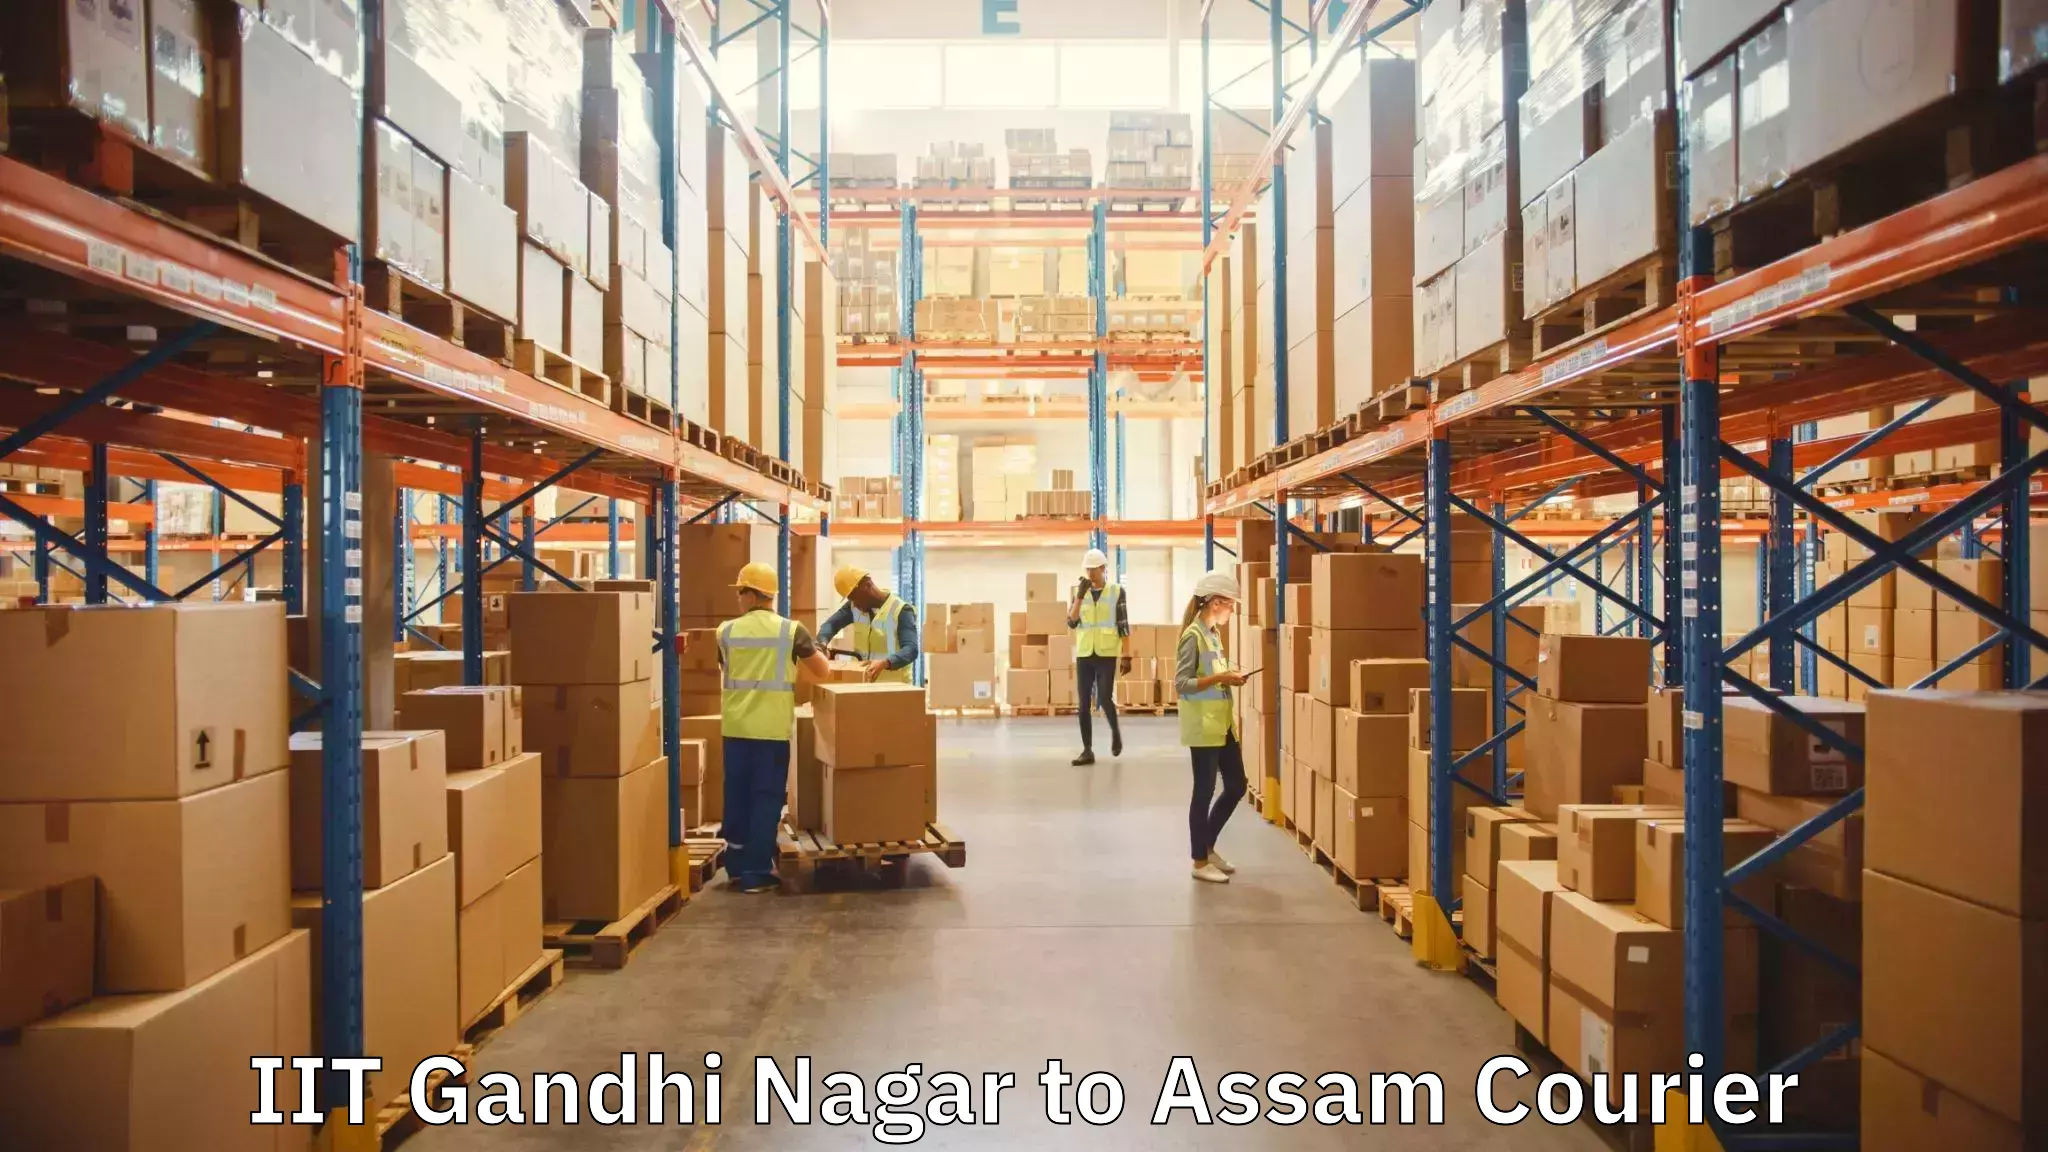 Skilled furniture movers IIT Gandhi Nagar to Darranga Mela